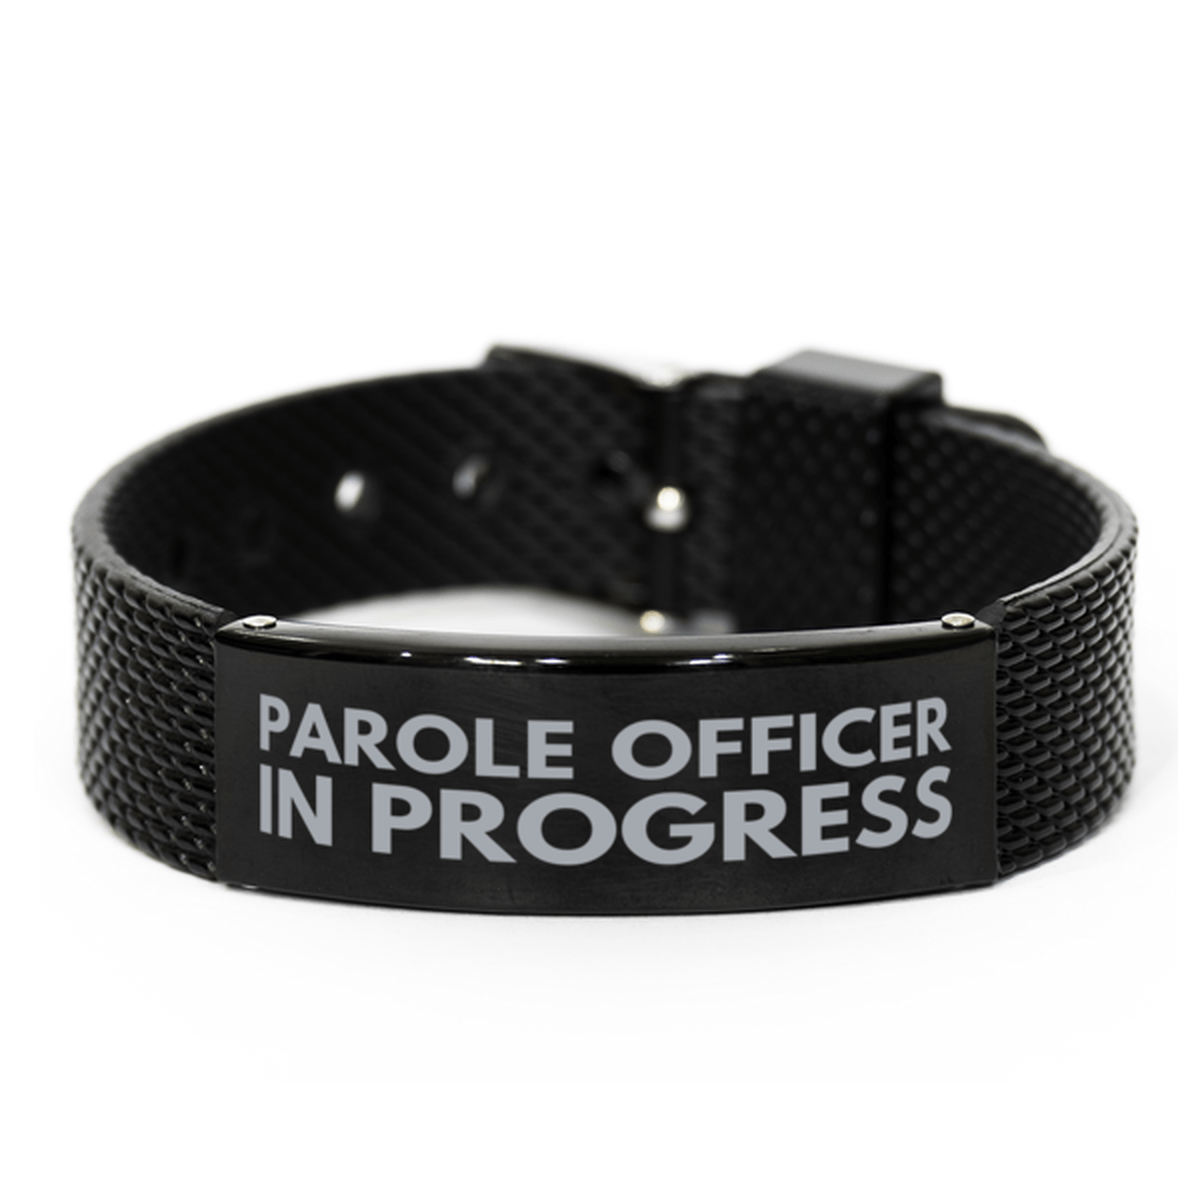 Inspirational Parole Officer Black Shark Mesh Bracelet, Parole Officer In Progress, Best Graduation Gifts for Students